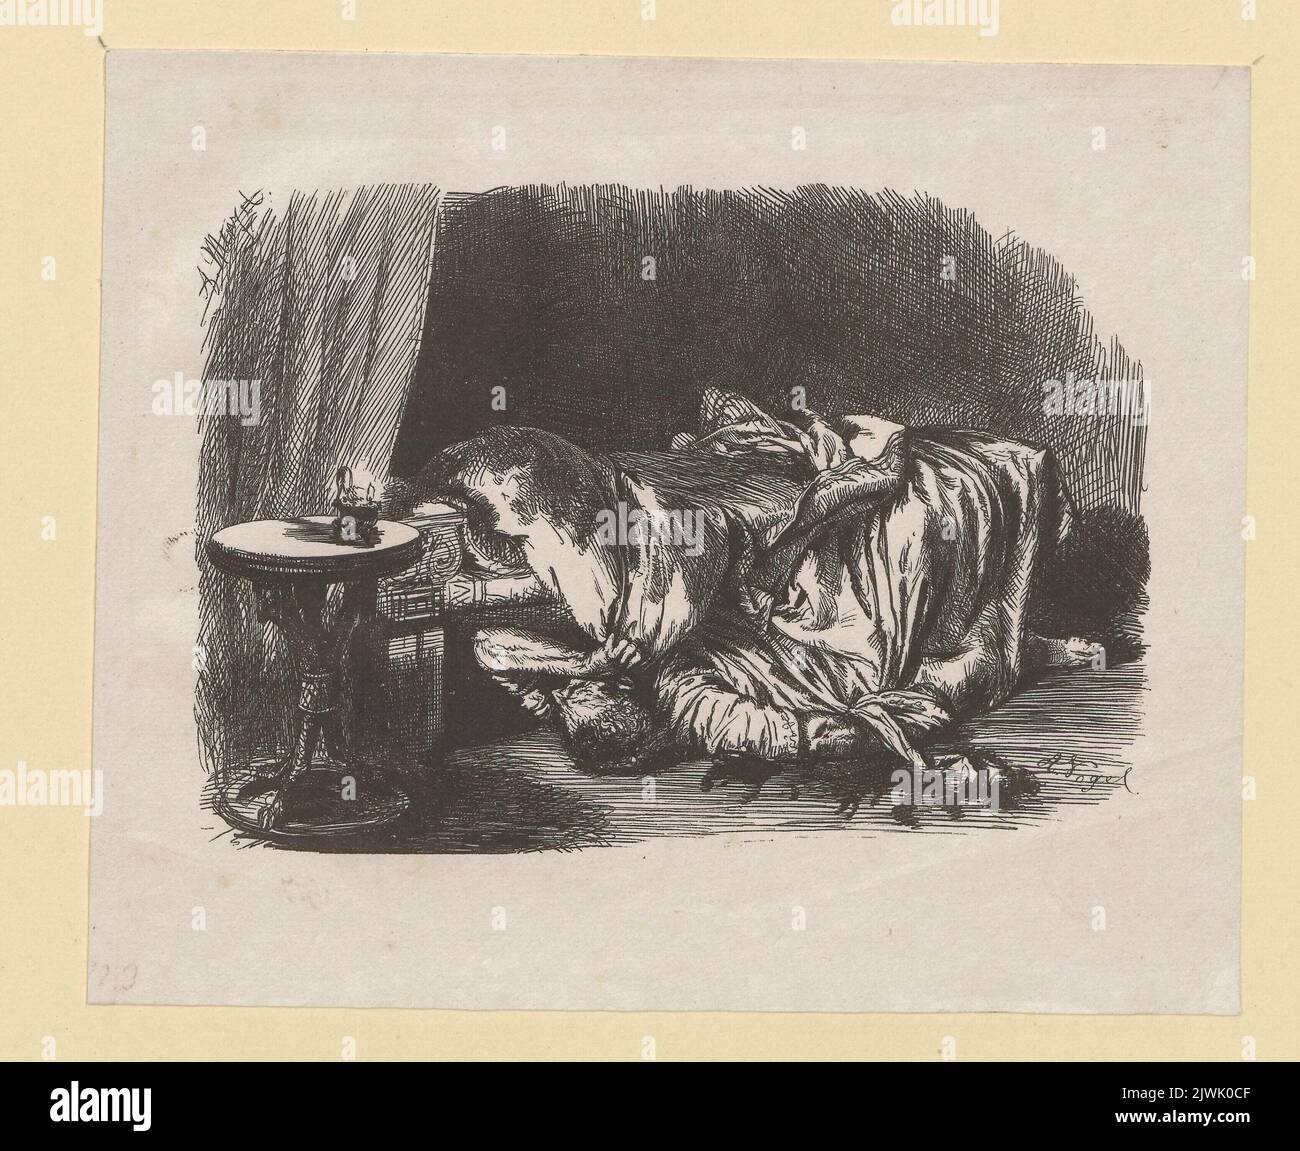 Vignette zur "Rede des Cato von Utica an seinen Sohn und die Freunde vor seinem Tode". Menzel, Adolph (1815-1905), disegnatore, cartoonista, Vogel, Johann Phillip Albert (1814-1886), taglialegno Foto Stock